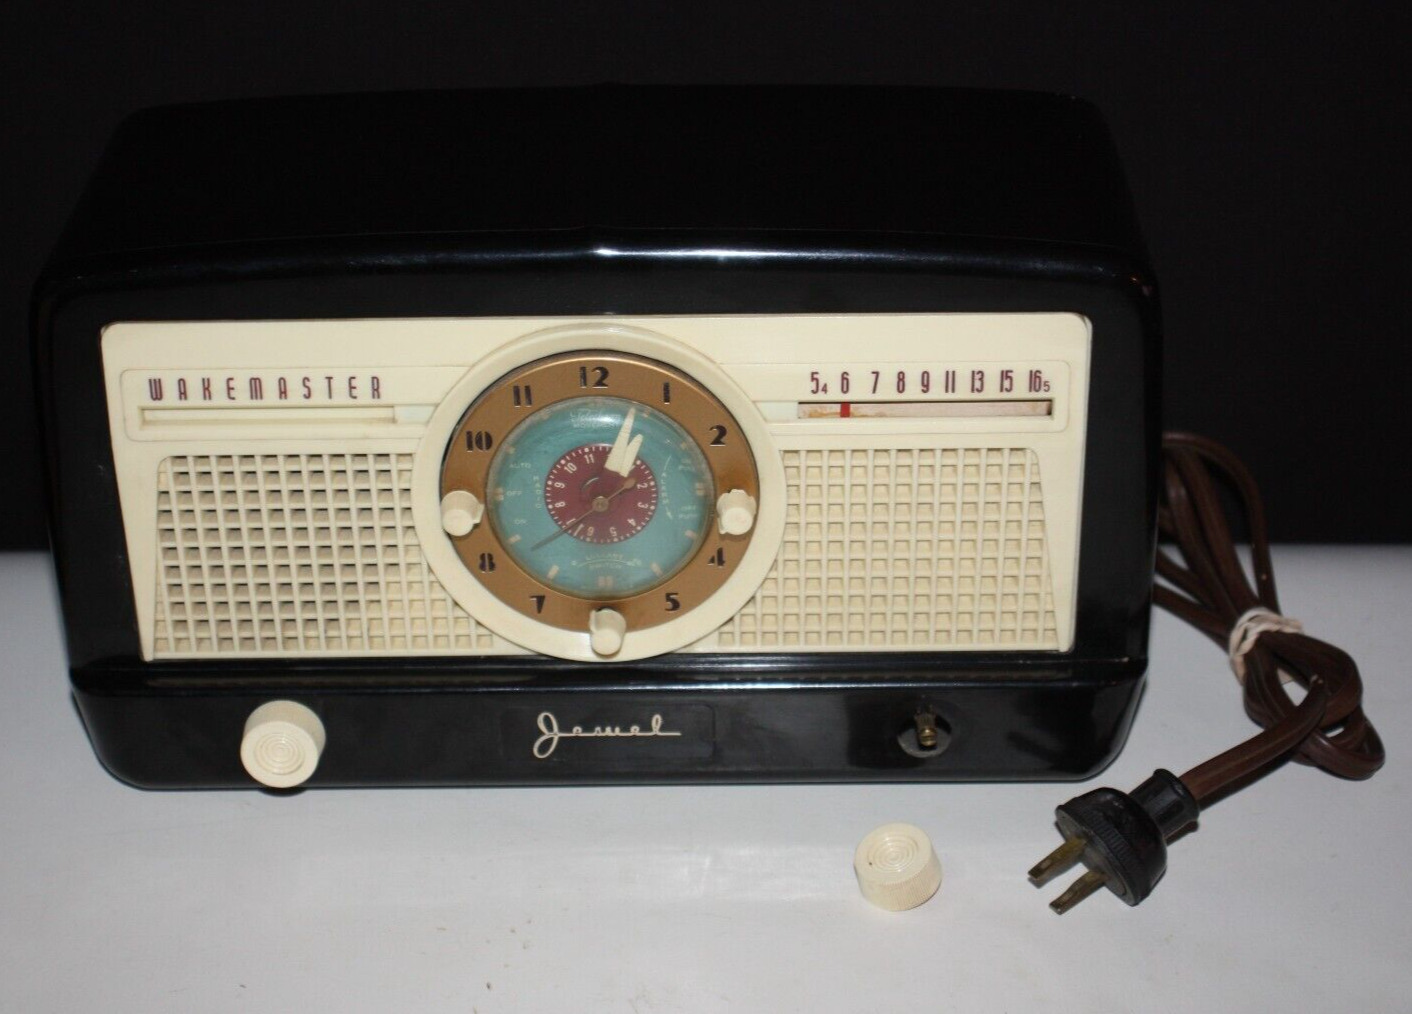 Vintage 1950s Jewel Wakemaster Clock Radio Model 5057U Beautiful READ